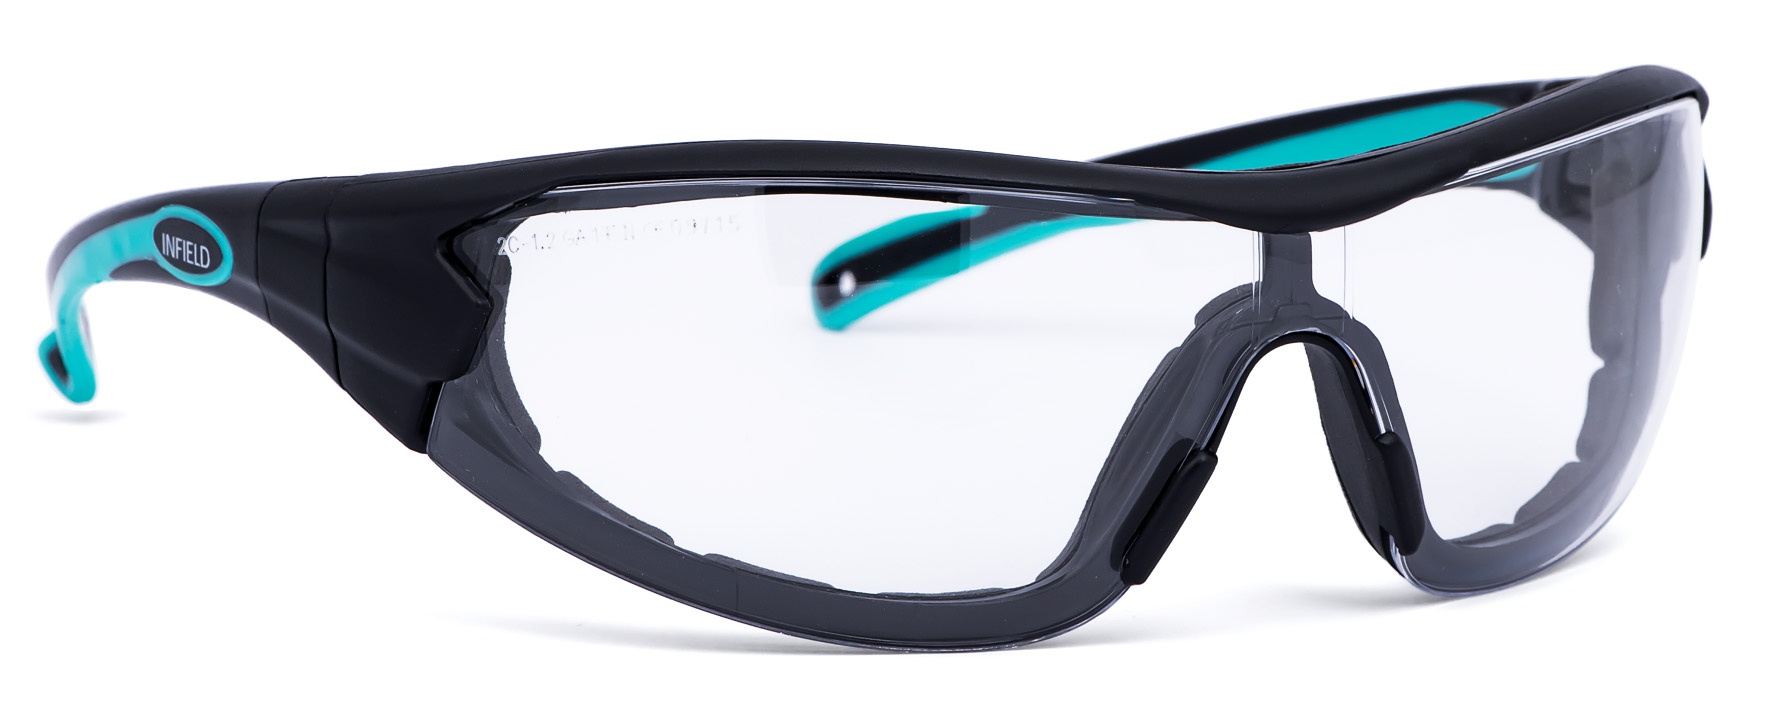 Защитные очки защита чего. Infield очки. Infield Velor очки. Очки gross защитные. Защитные открытые очки РОСОМЗ o88 Surgut 18840.